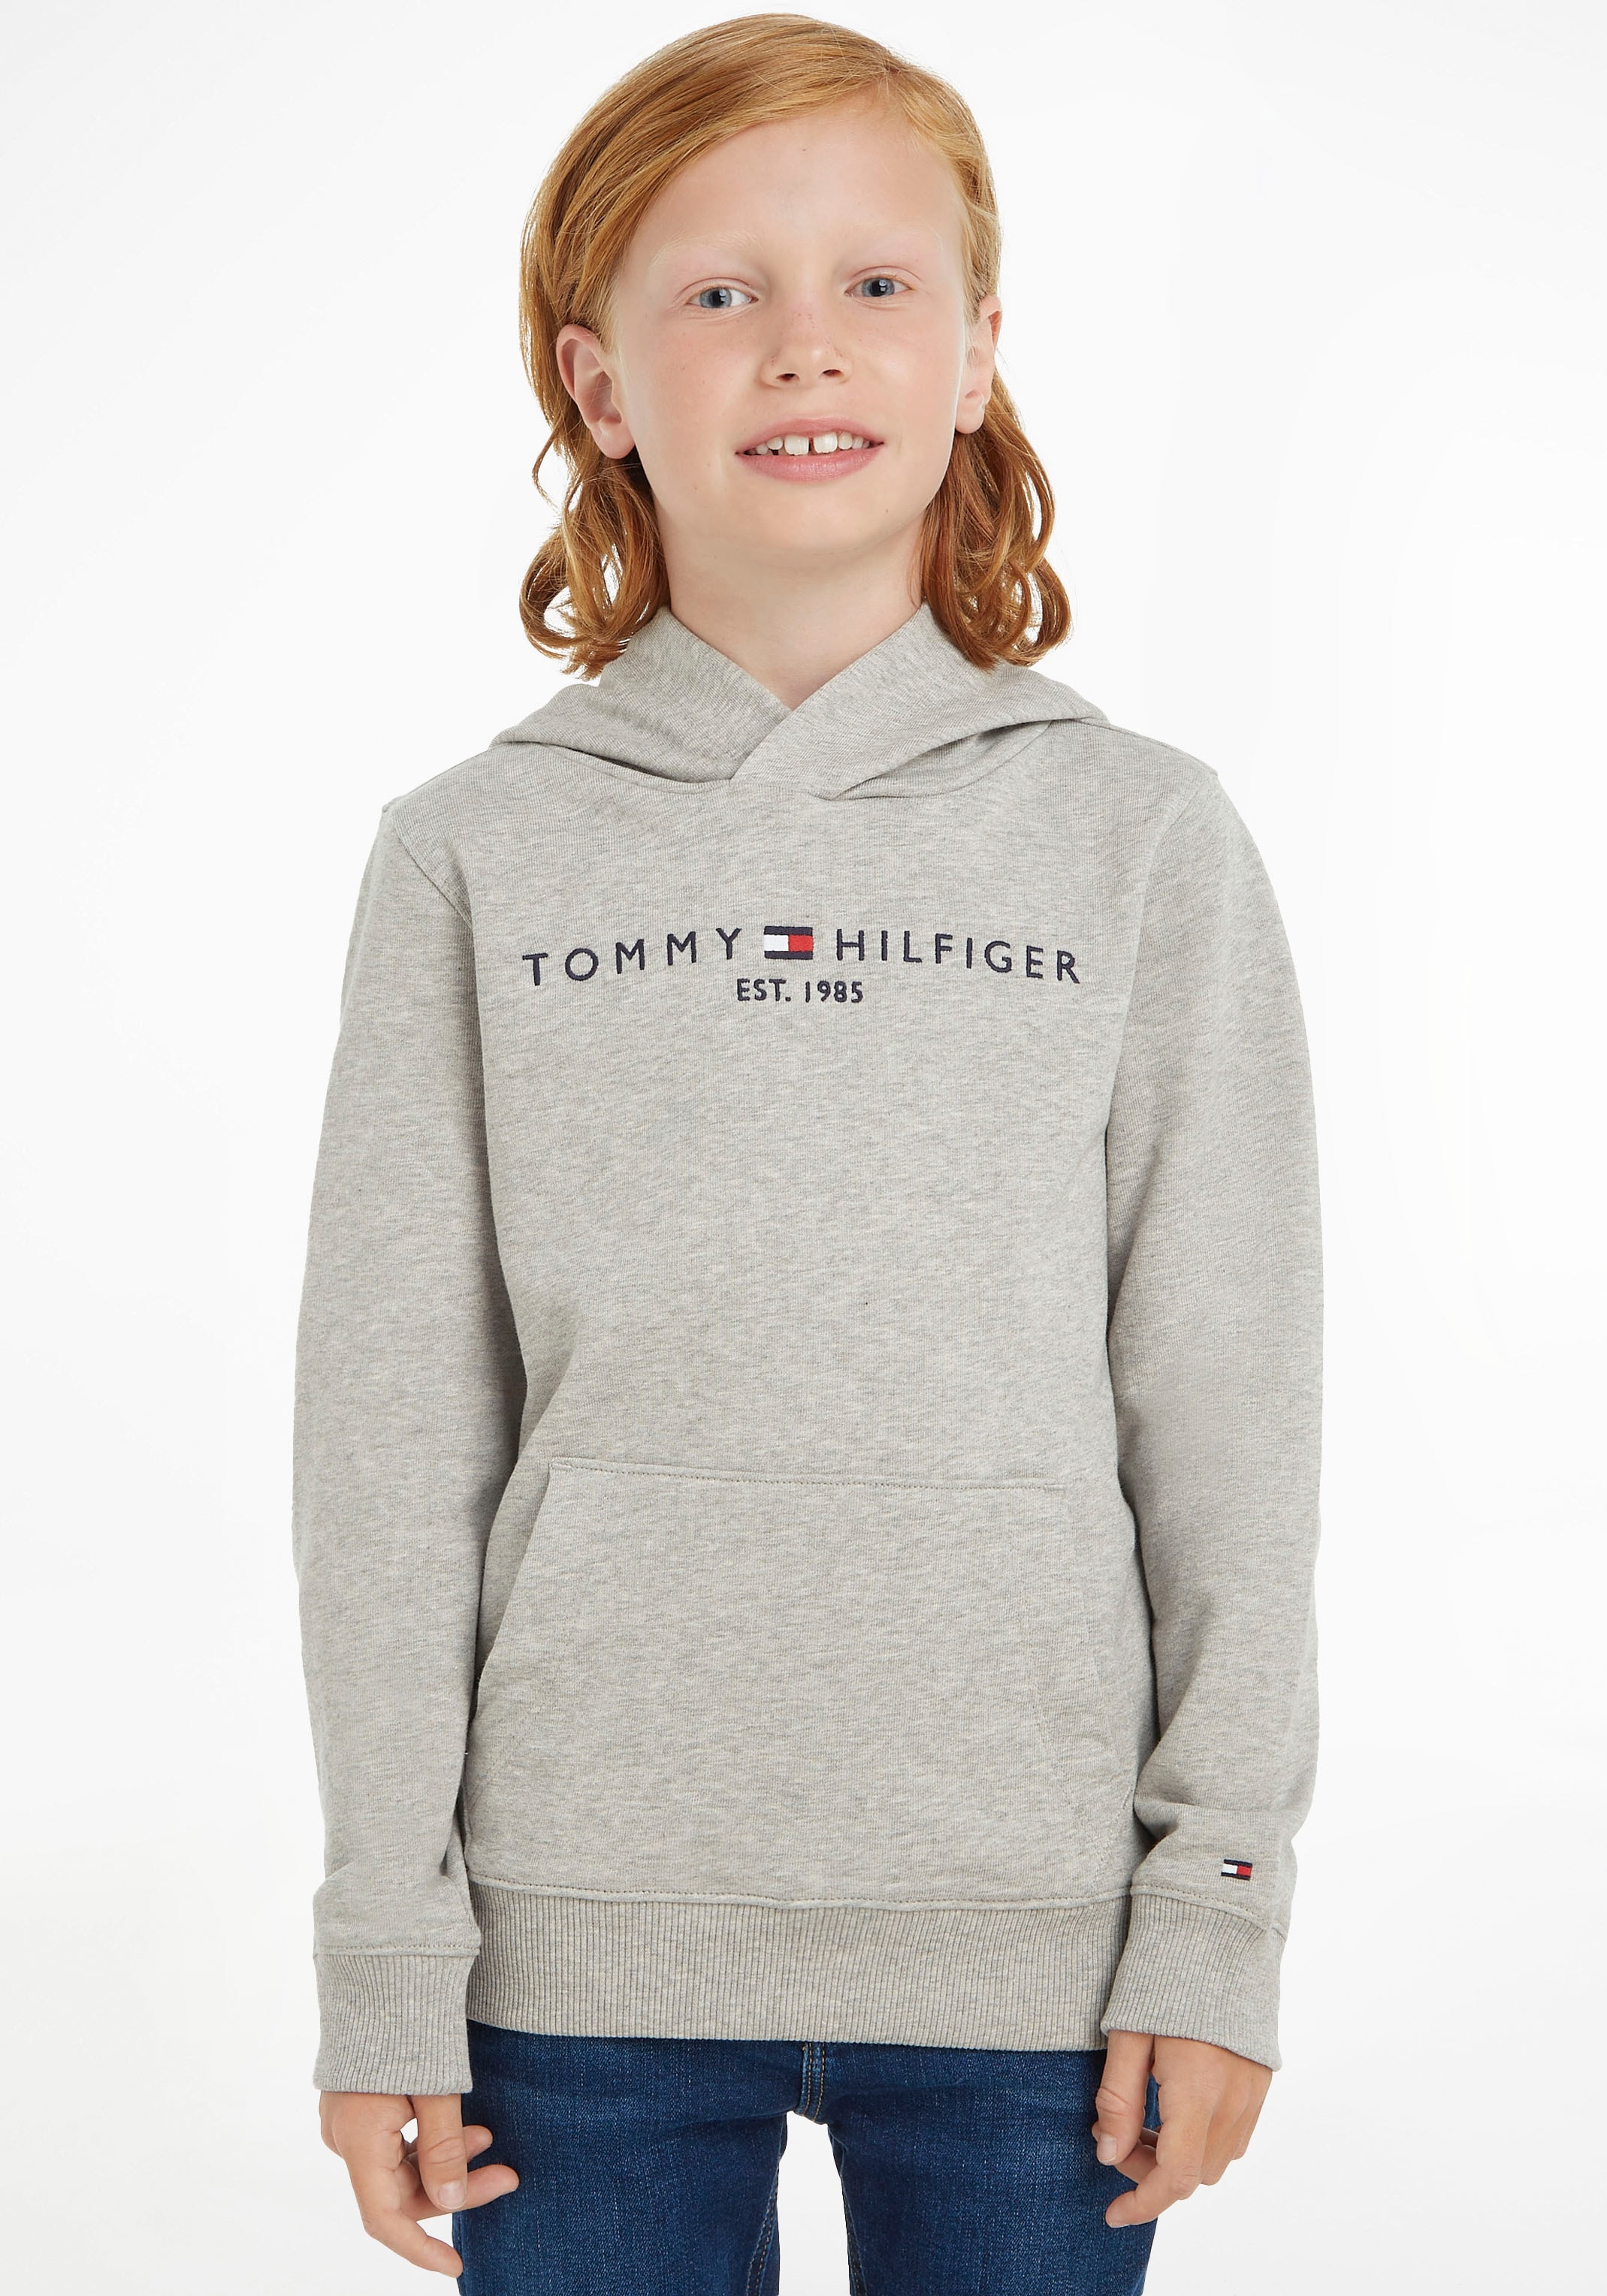 Kinder Kids ✌ und »ESSENTIAL Tommy Mädchen Acheter en HOODIE«, ligne MiniMe,für Kapuzensweatshirt Hilfiger Junior Jungen